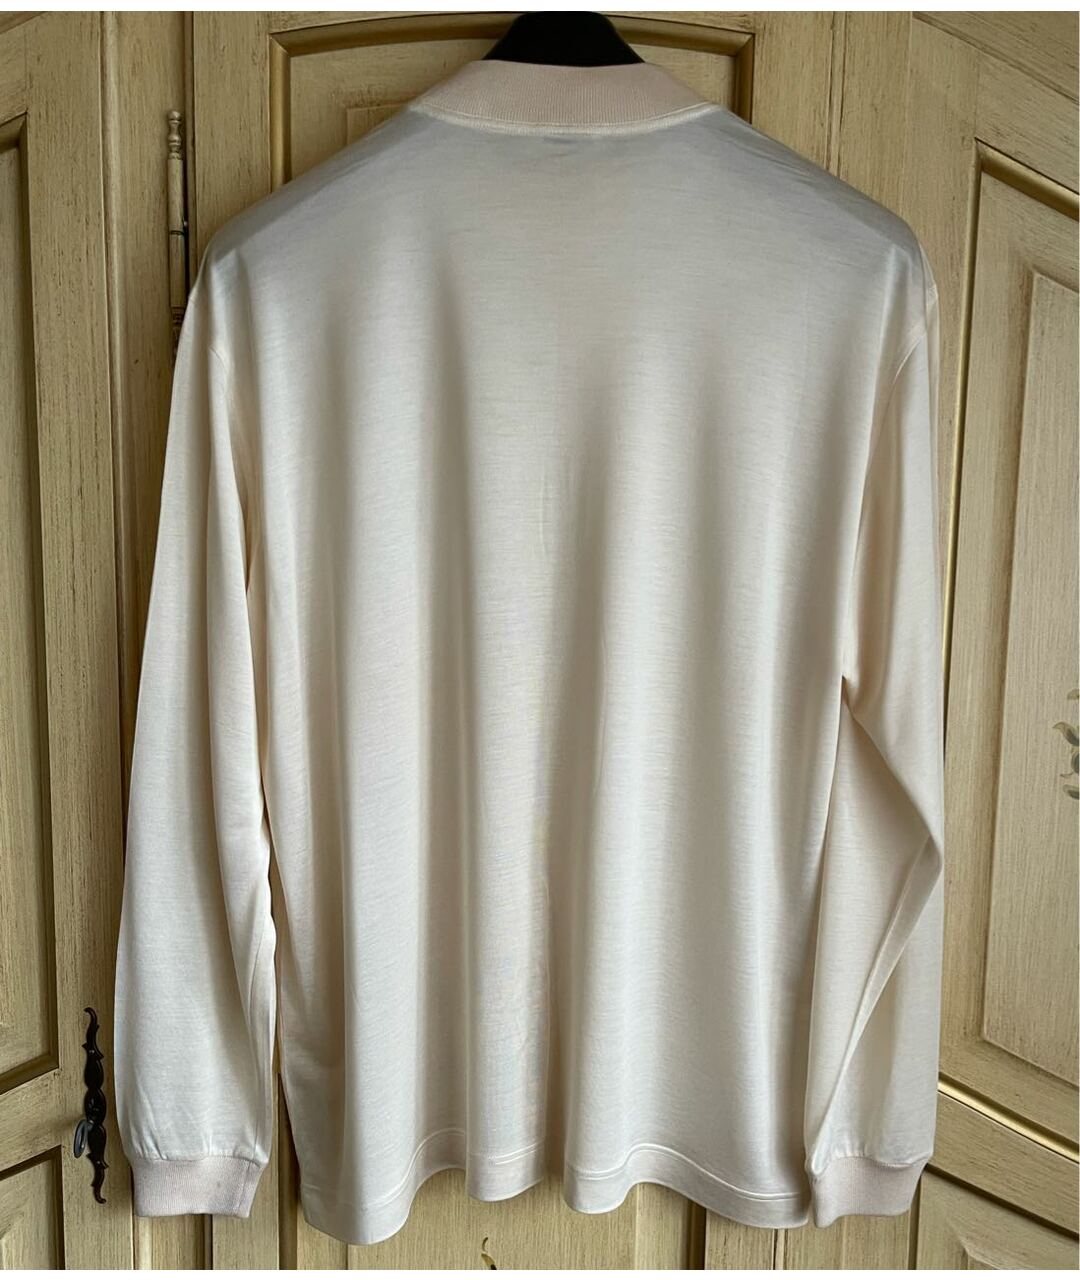 LARUSMIANI Белый шелковый джемпер / свитер, фото 2